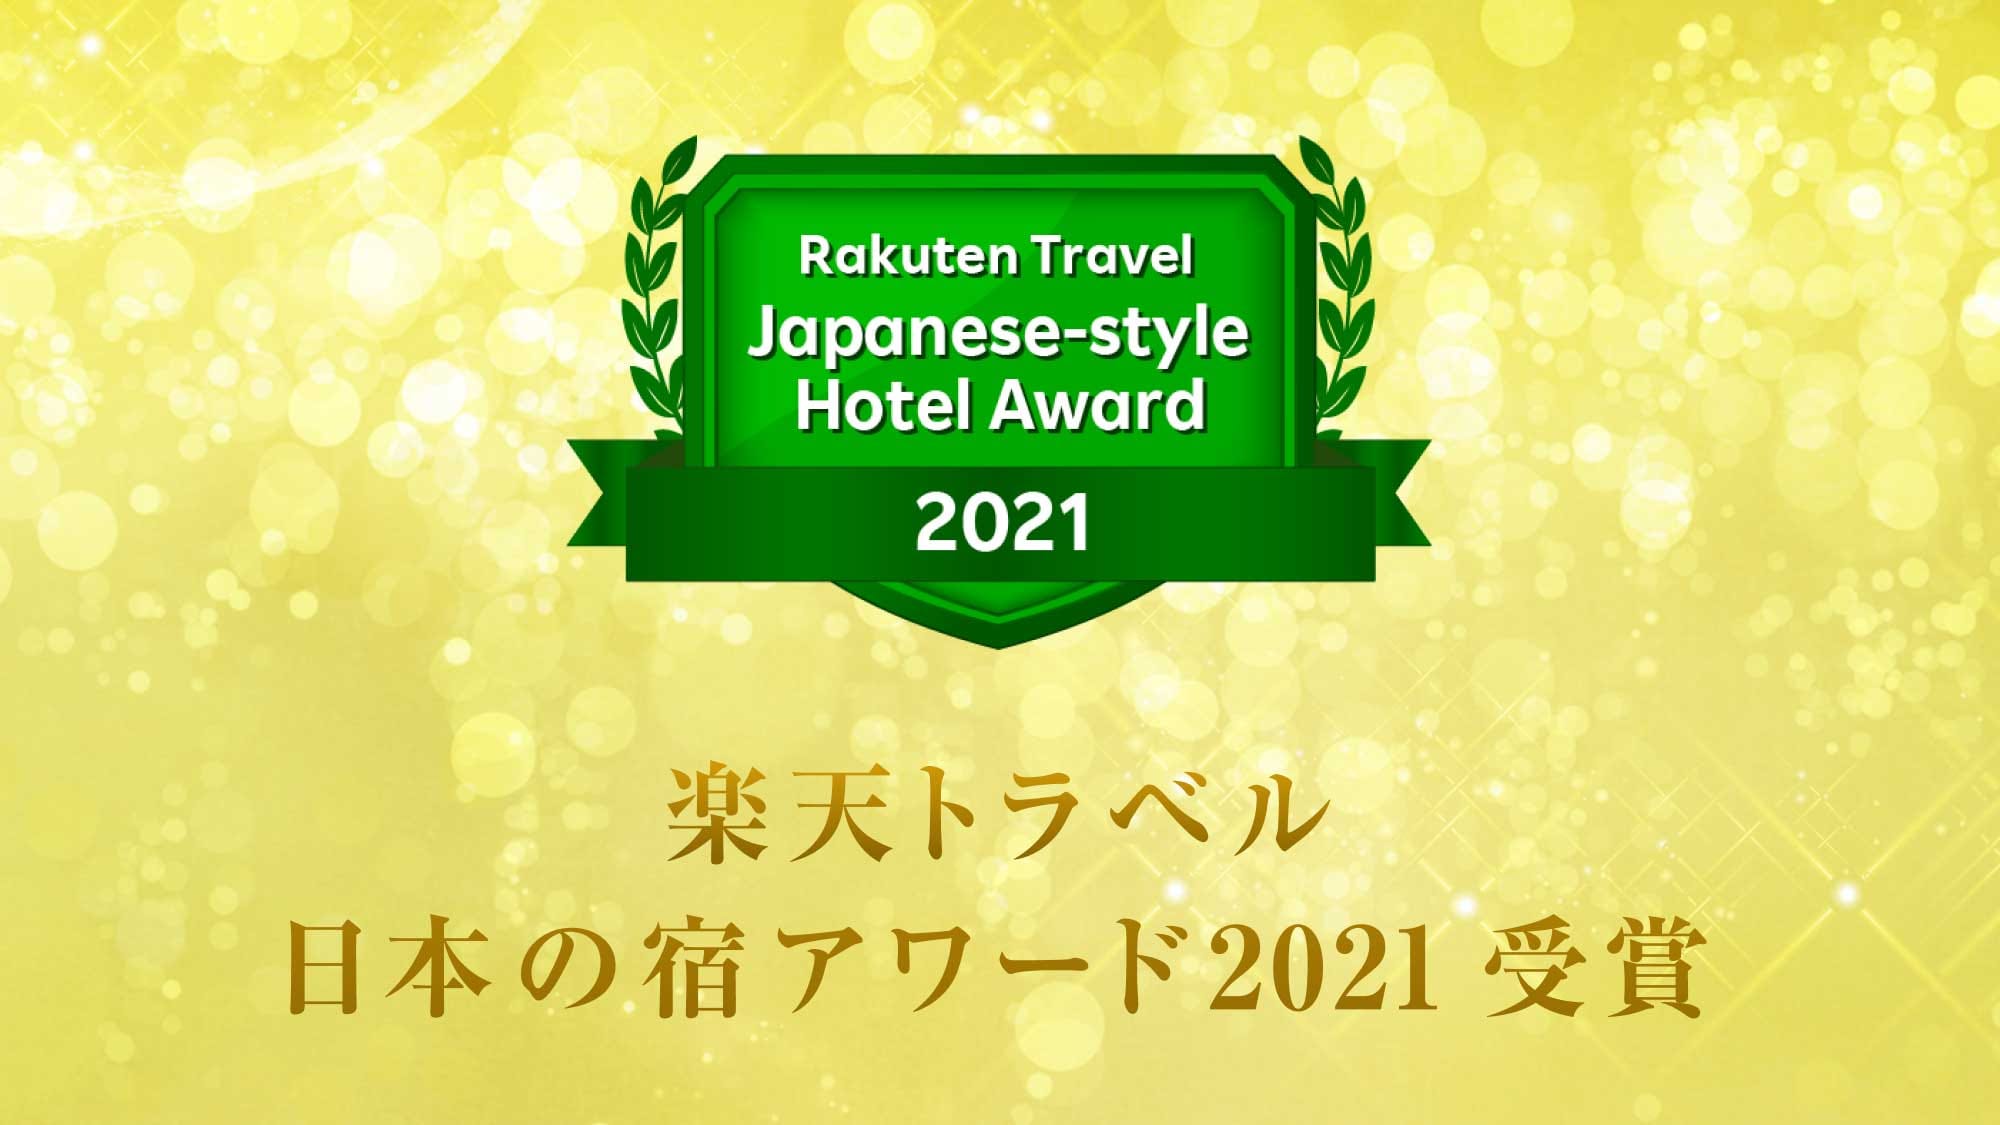 Rakuten Travel ได้รับรางวัล Japanese Inn Award 2021! เรากำลังขายแผนที่ระลึกที่ยอดเยี่ยม♪